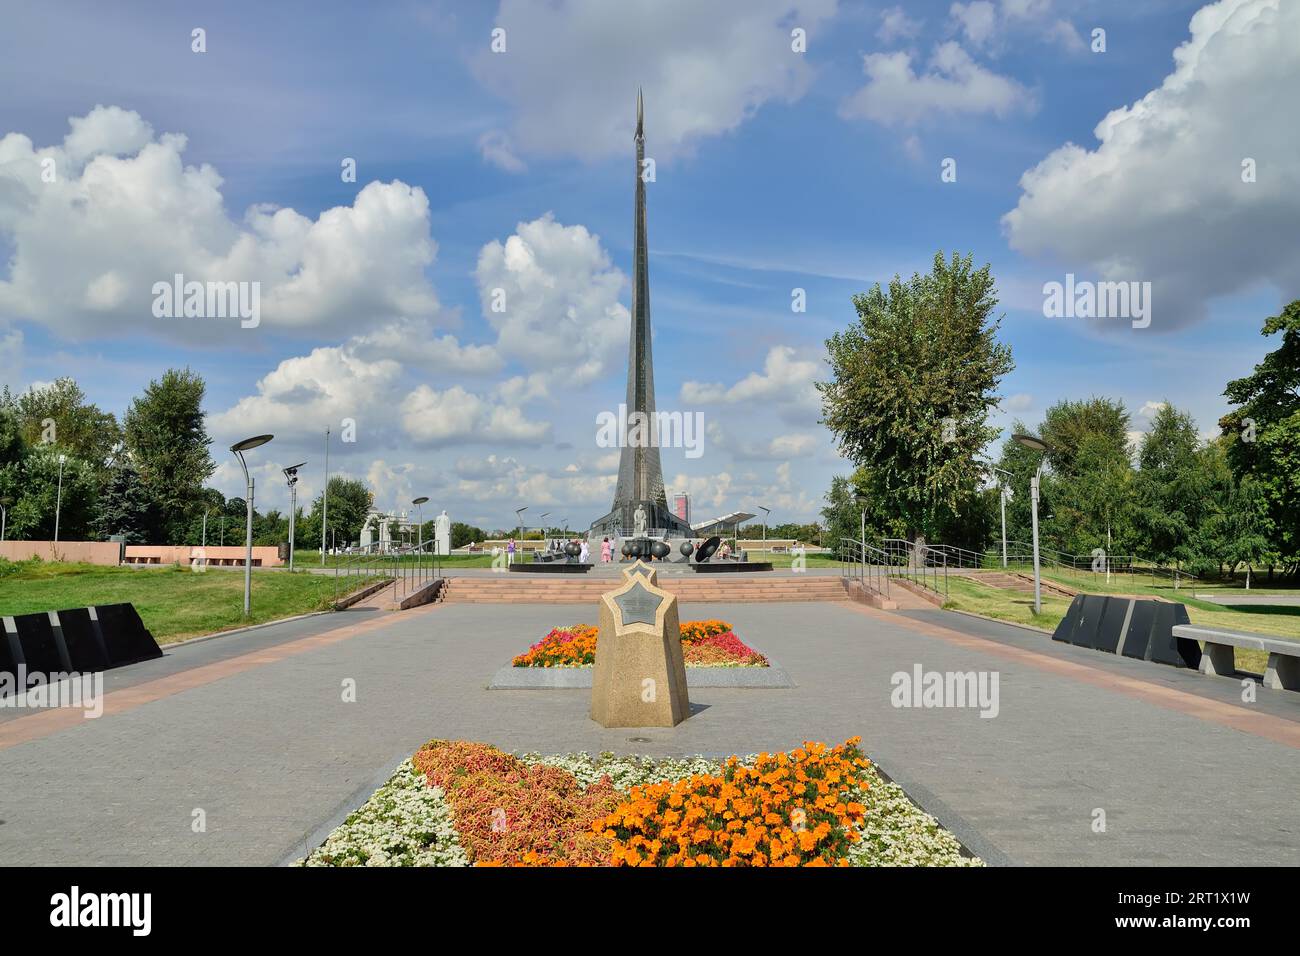 Moscou, Russie, 25 août 2020 : vue de l'allée des cosmonautes et du monument aux conquérants de l'espace au Musée de la cosmonaute. Moscou Banque D'Images